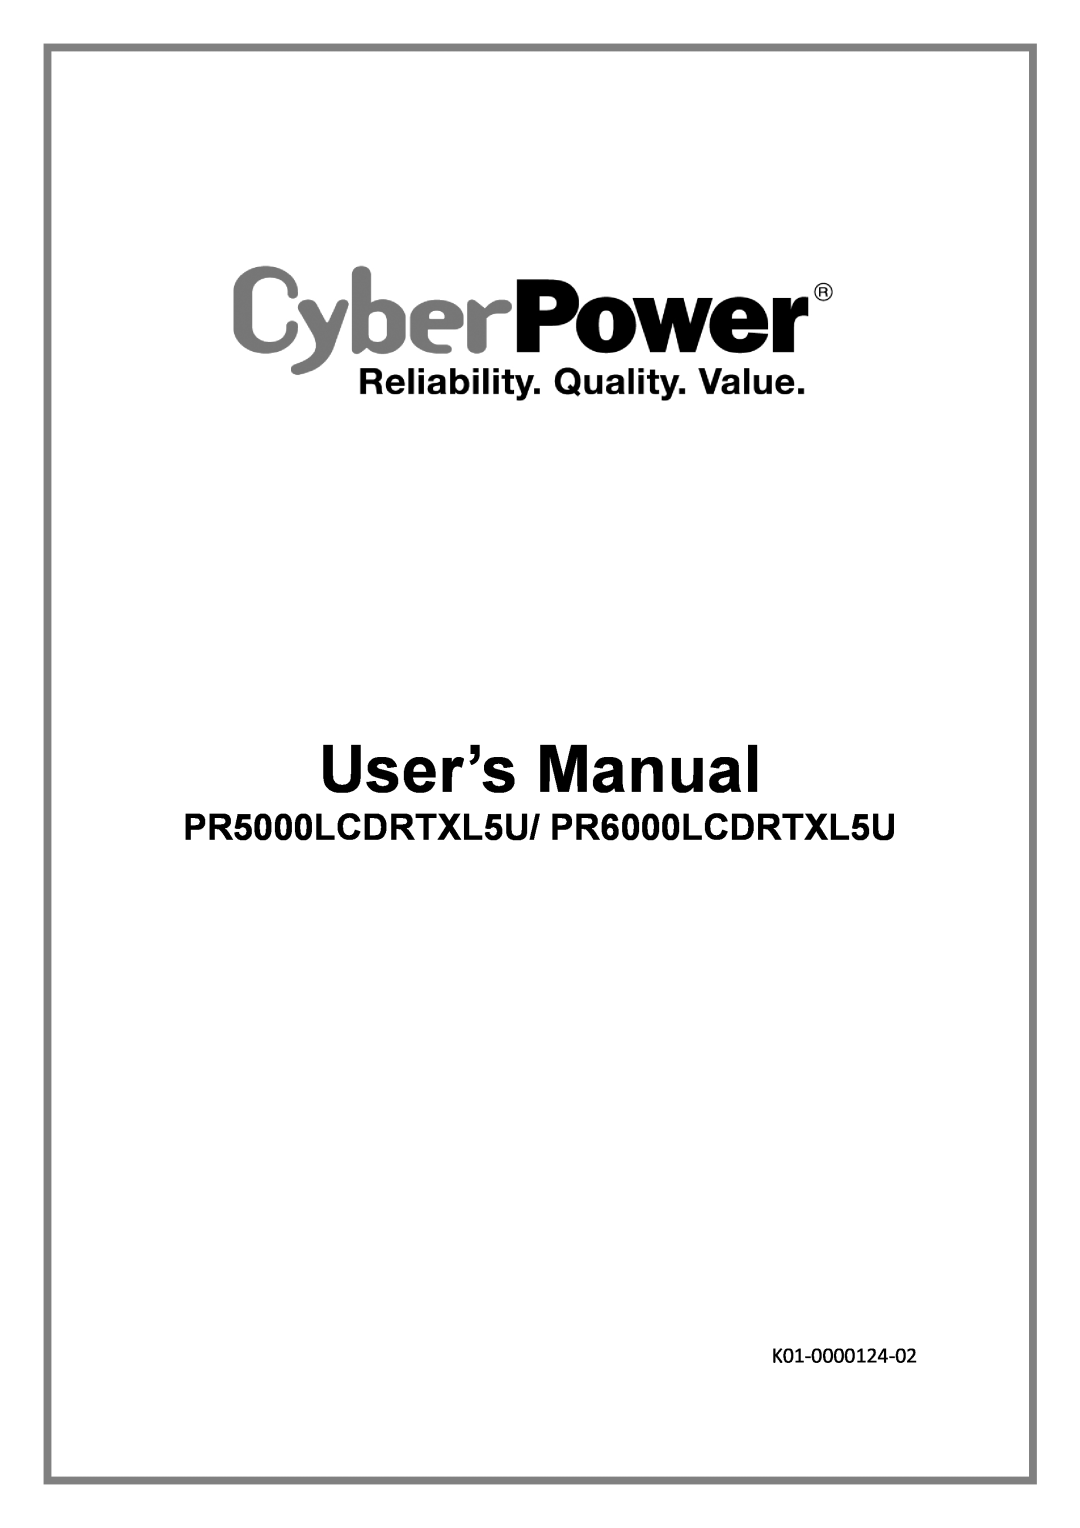 CyberPower PR50000LCDRTXL5U user manual User’s Manual, PR5000LCDRTXL5U/ PR6000LCDRTXL5U, K01-0000124-02 